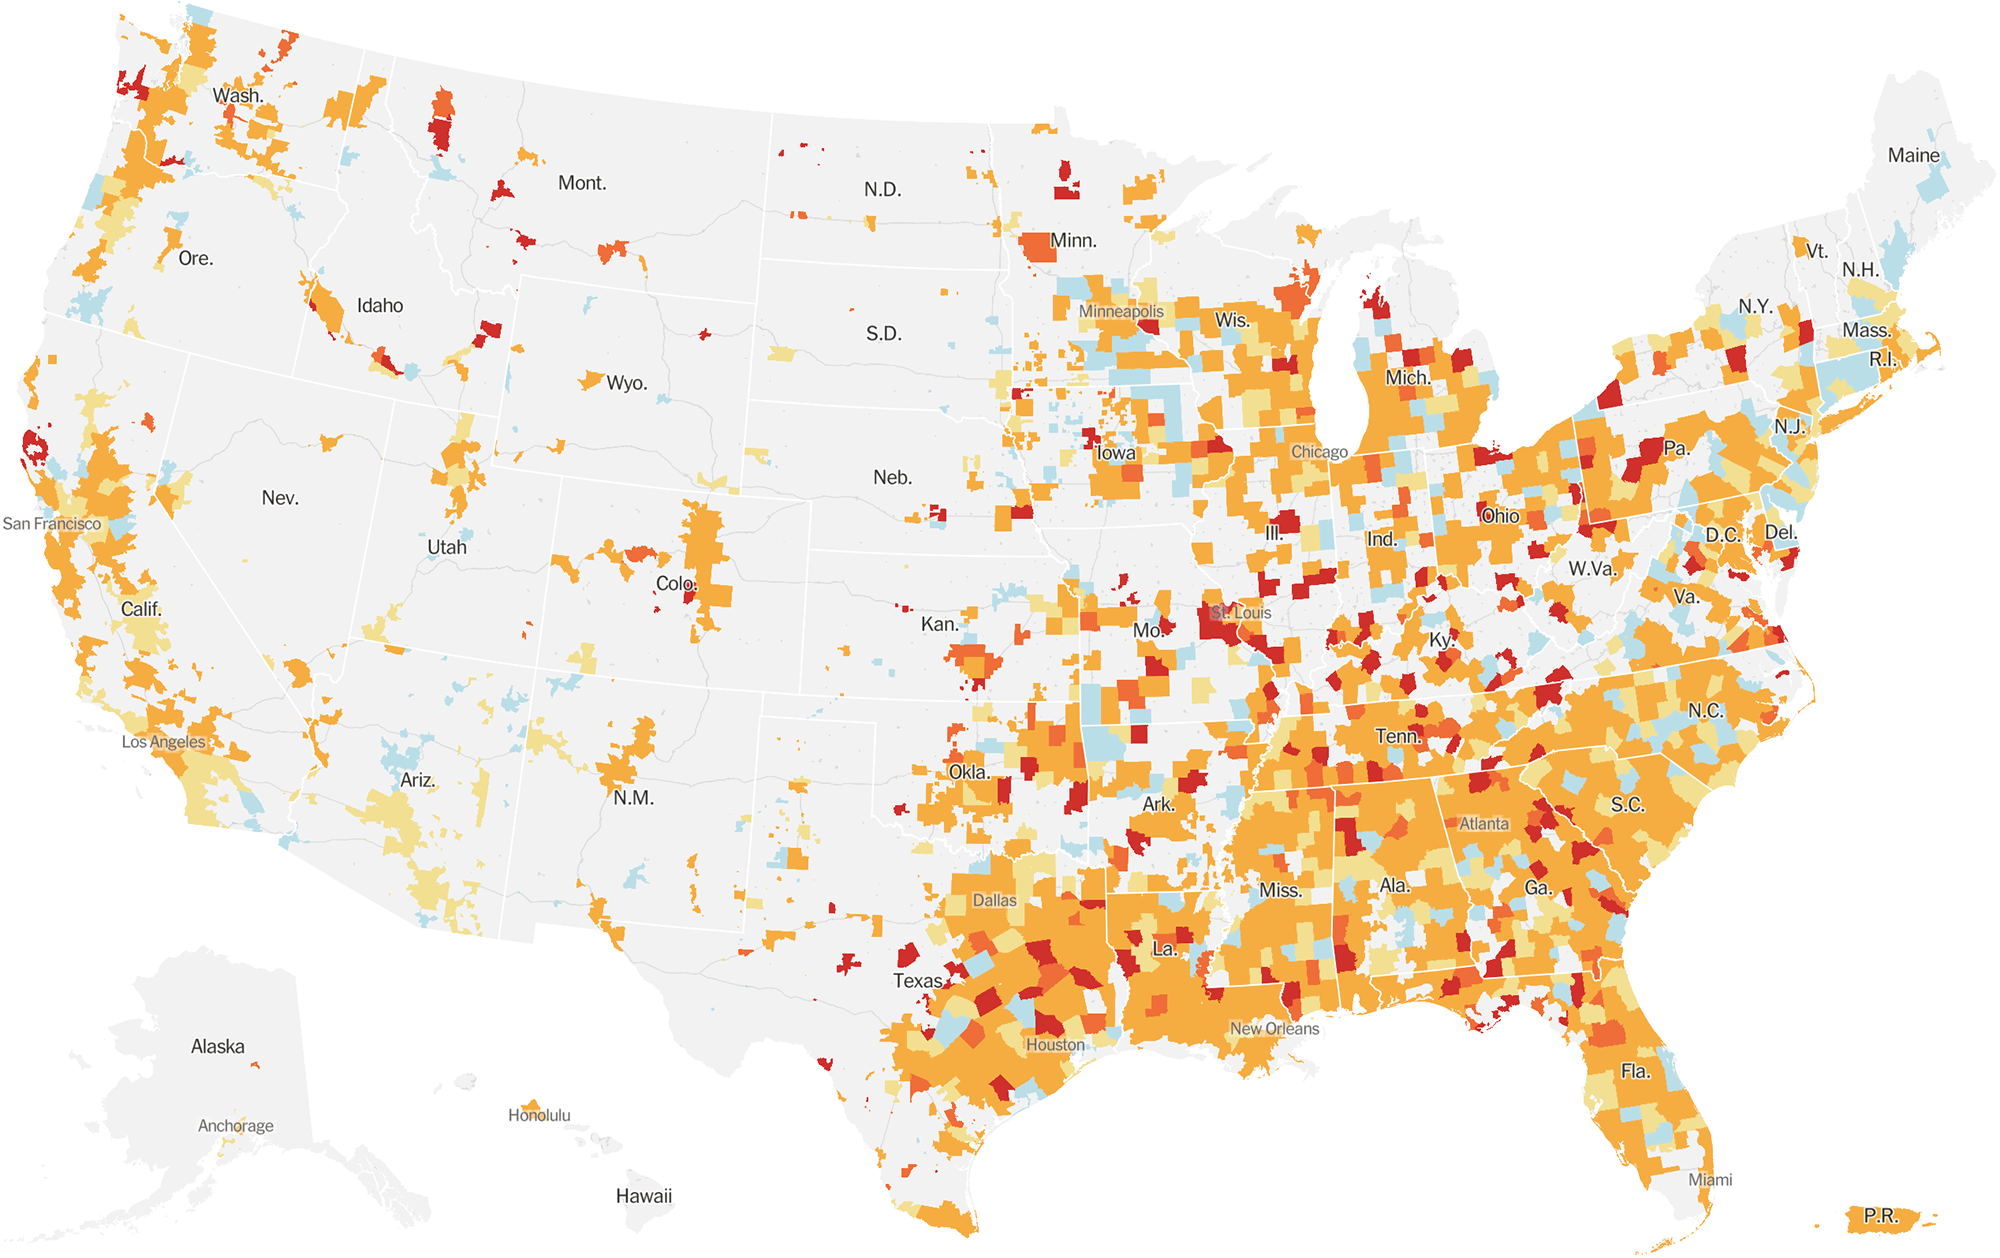 Случаи заражения коронавирусом за последние две недели в разных регионах США на 16 июля 2020 года. Голубой — количество зараженных падает, желтый — остается примерно на прежнем уровне, оранжевый и красный — растет, серый — несколько случаев заражений или вообще нет. Источник: The New York Times